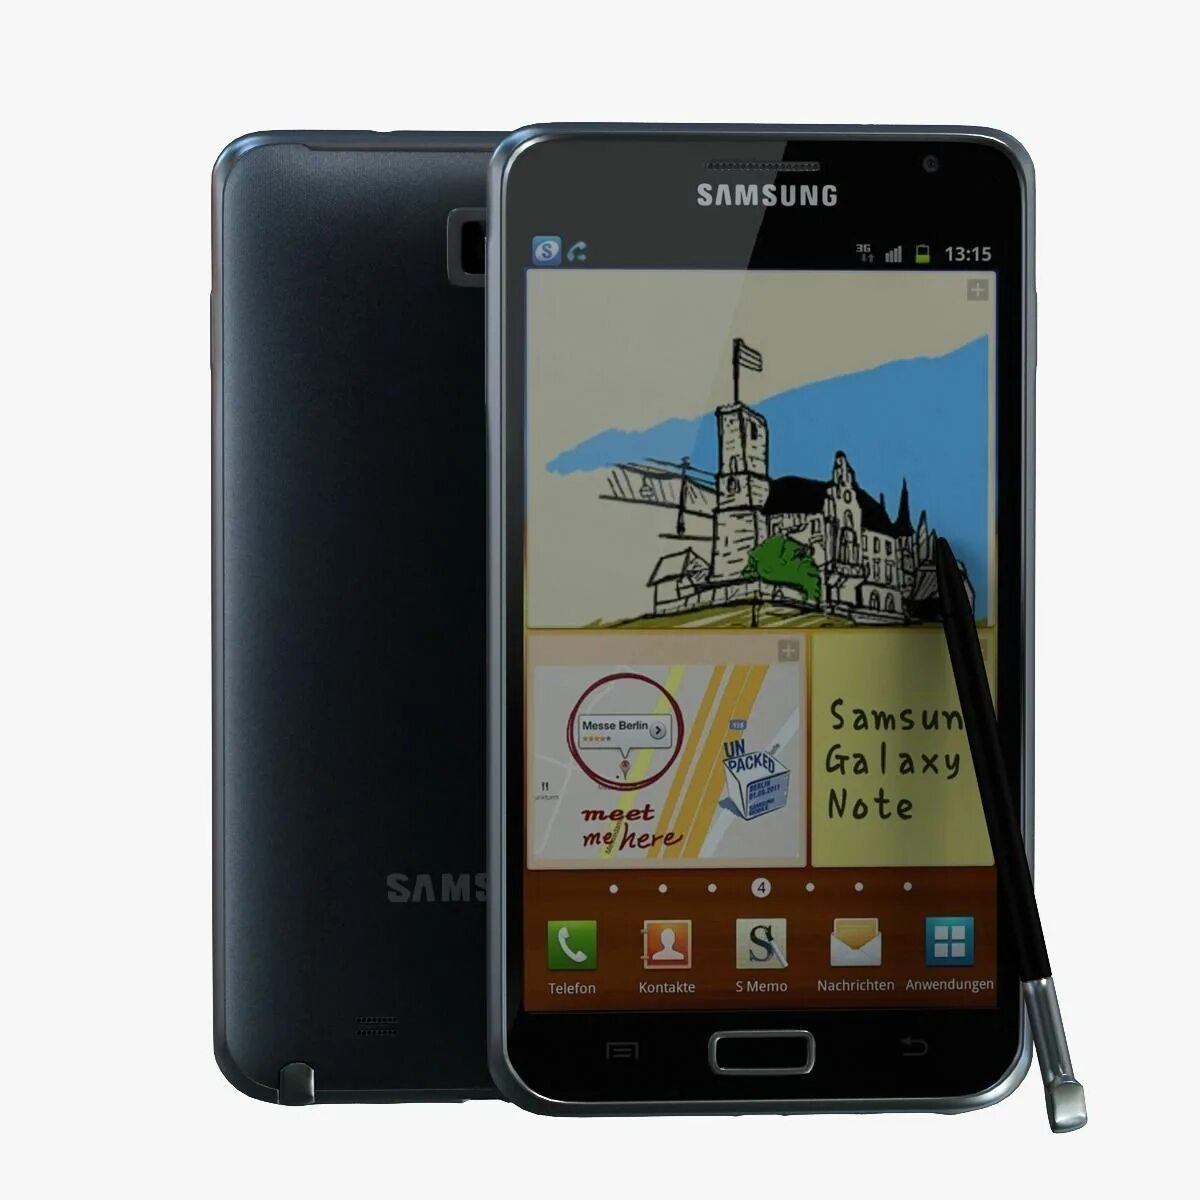 Galaxy note gt. Samsung gt n7000. Samsung Galaxy Note n7000. Samsung Galaxy Note gt-n7000. Samsung gt 7000.